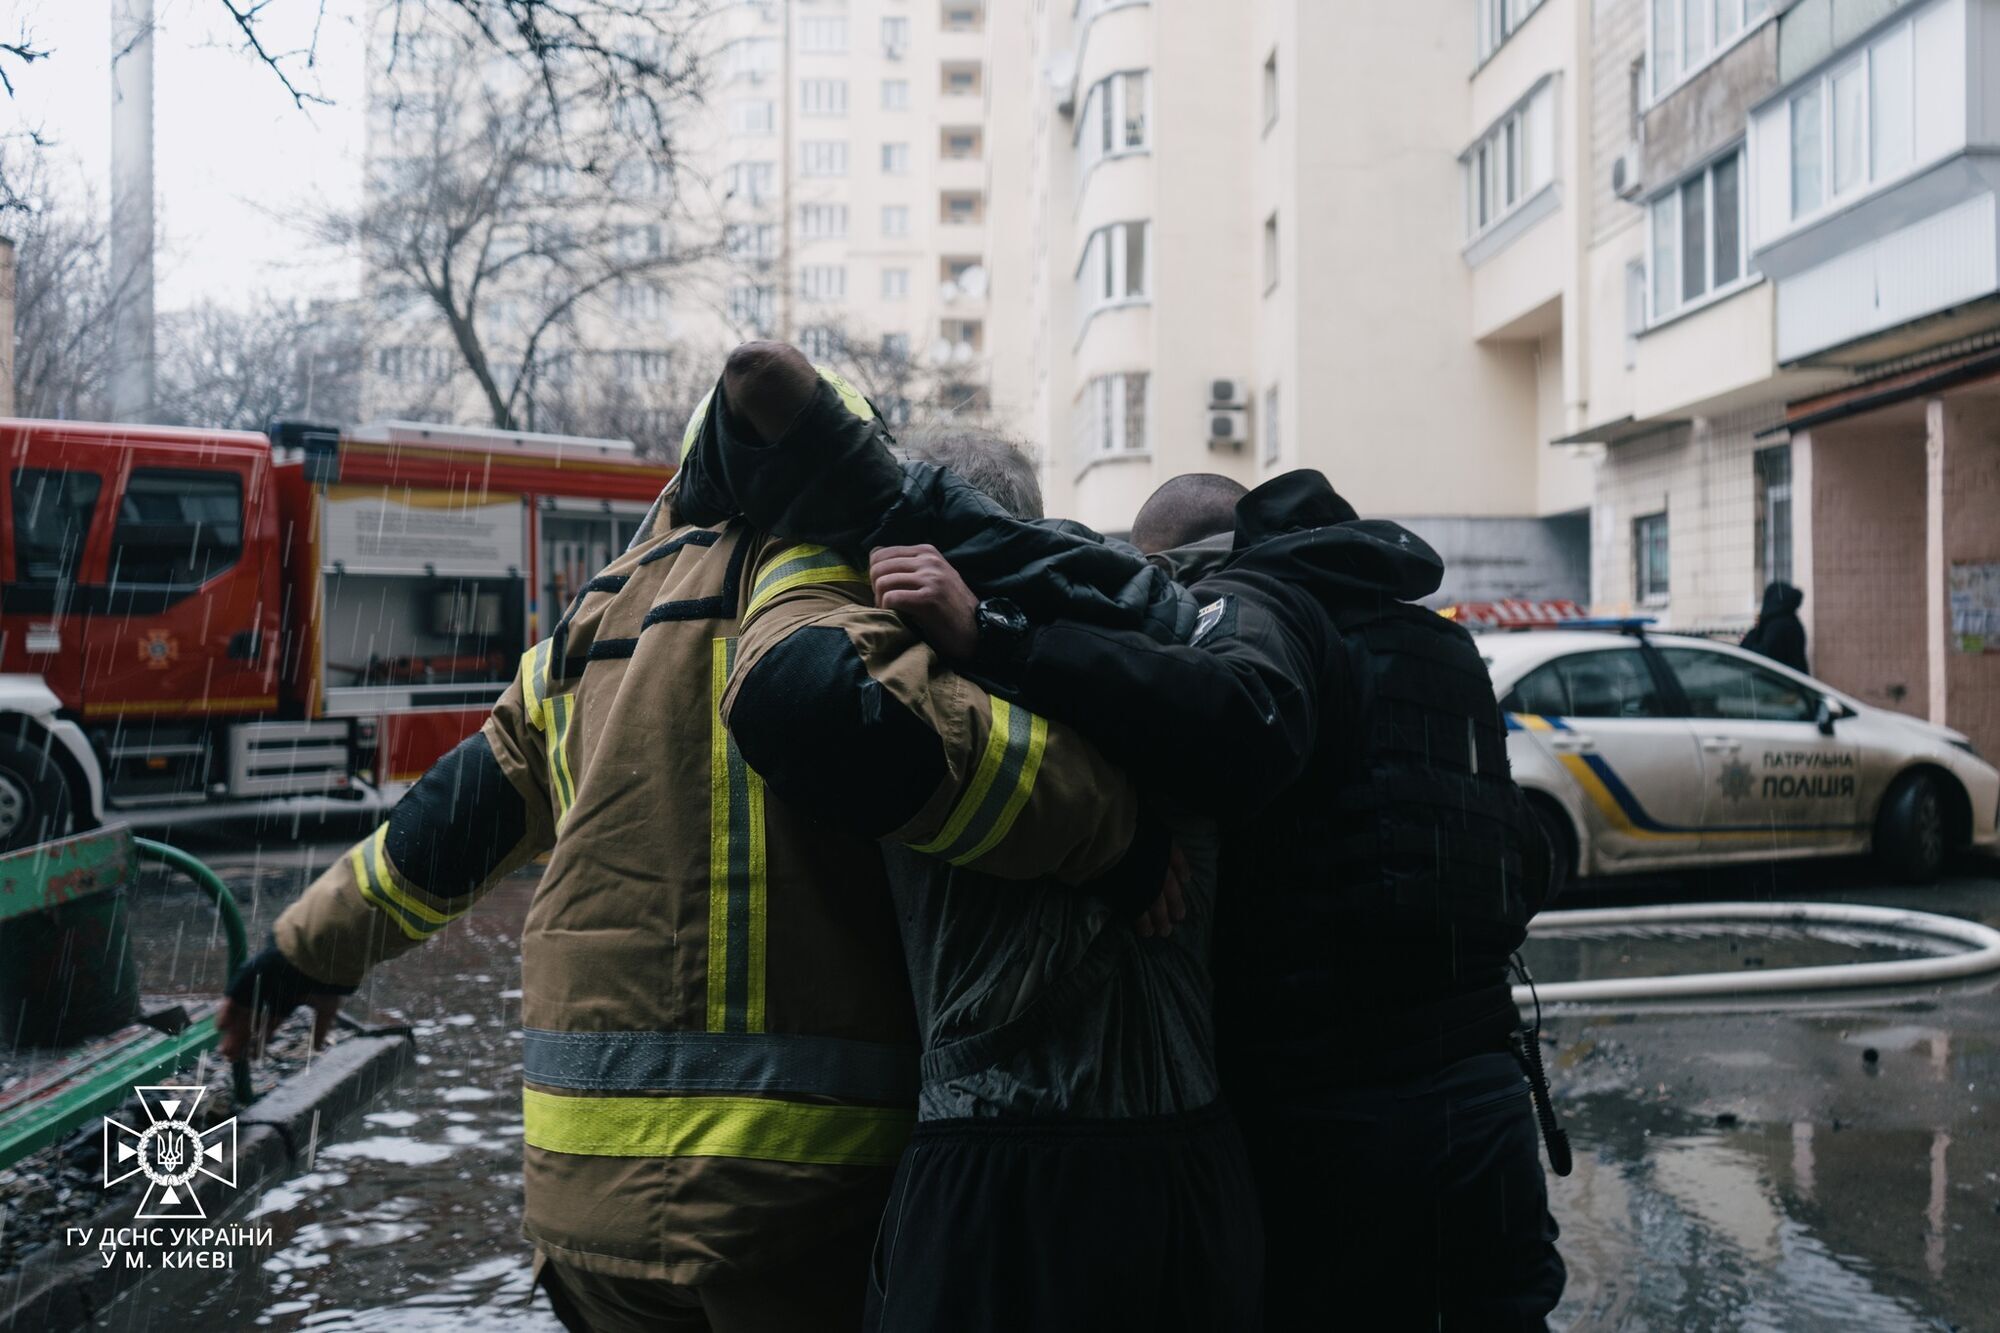 В Киеве патрульные и бойцы ГСЧС во время пожара спасли пенсионера. Видео